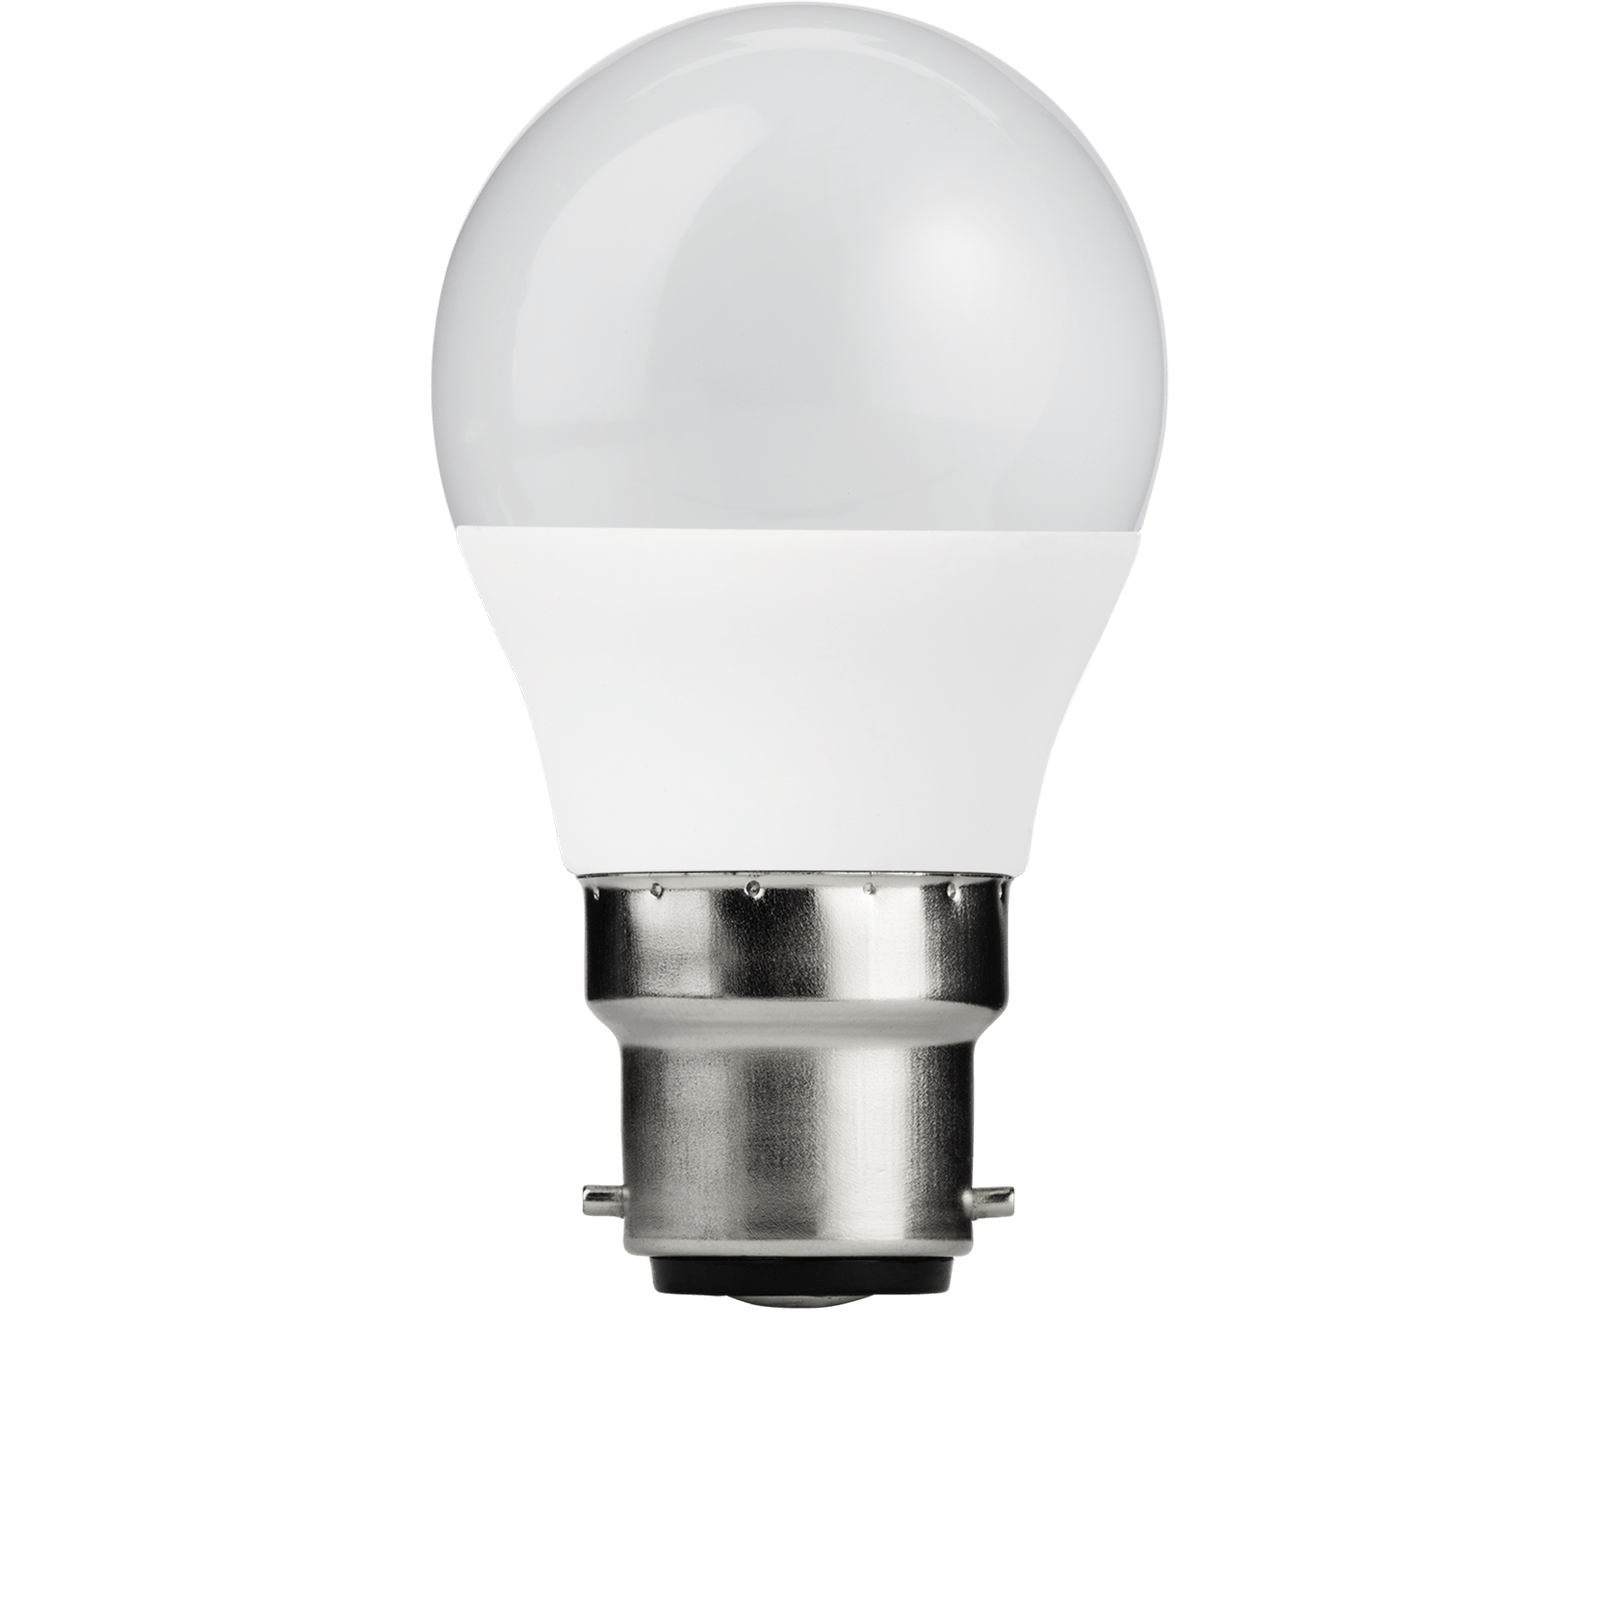 Photo of Tcp Led Globe 60w B22 Coat Warm Light Bulb - 2 Pack